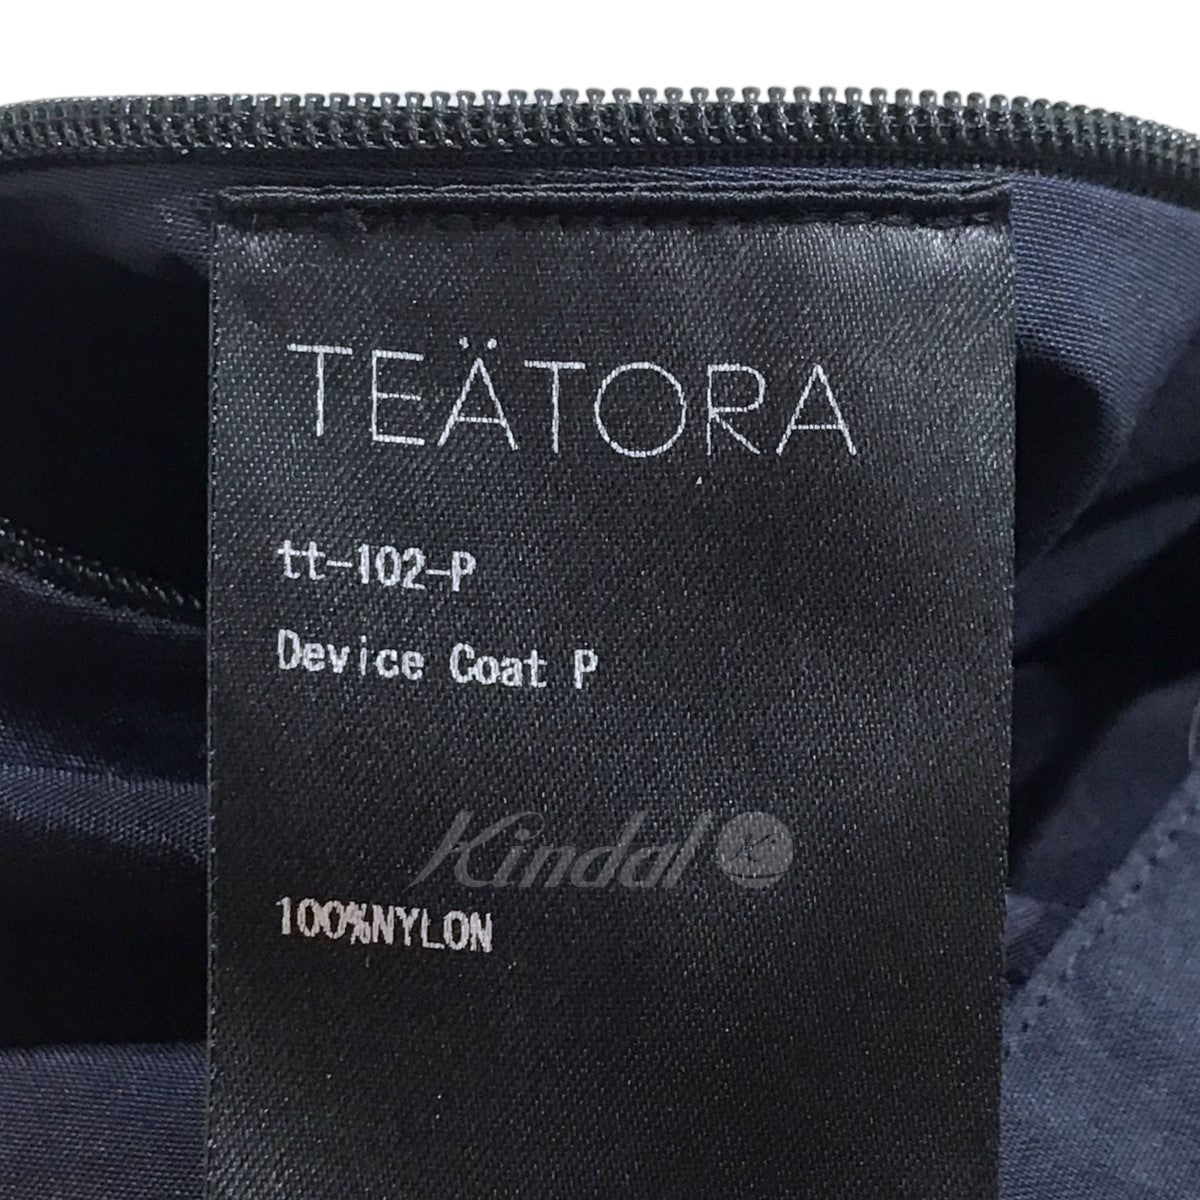 TEATORA(テアトラ) ナイロンロングコート DEVICE COAT - packable デバイスコート tt-102-P